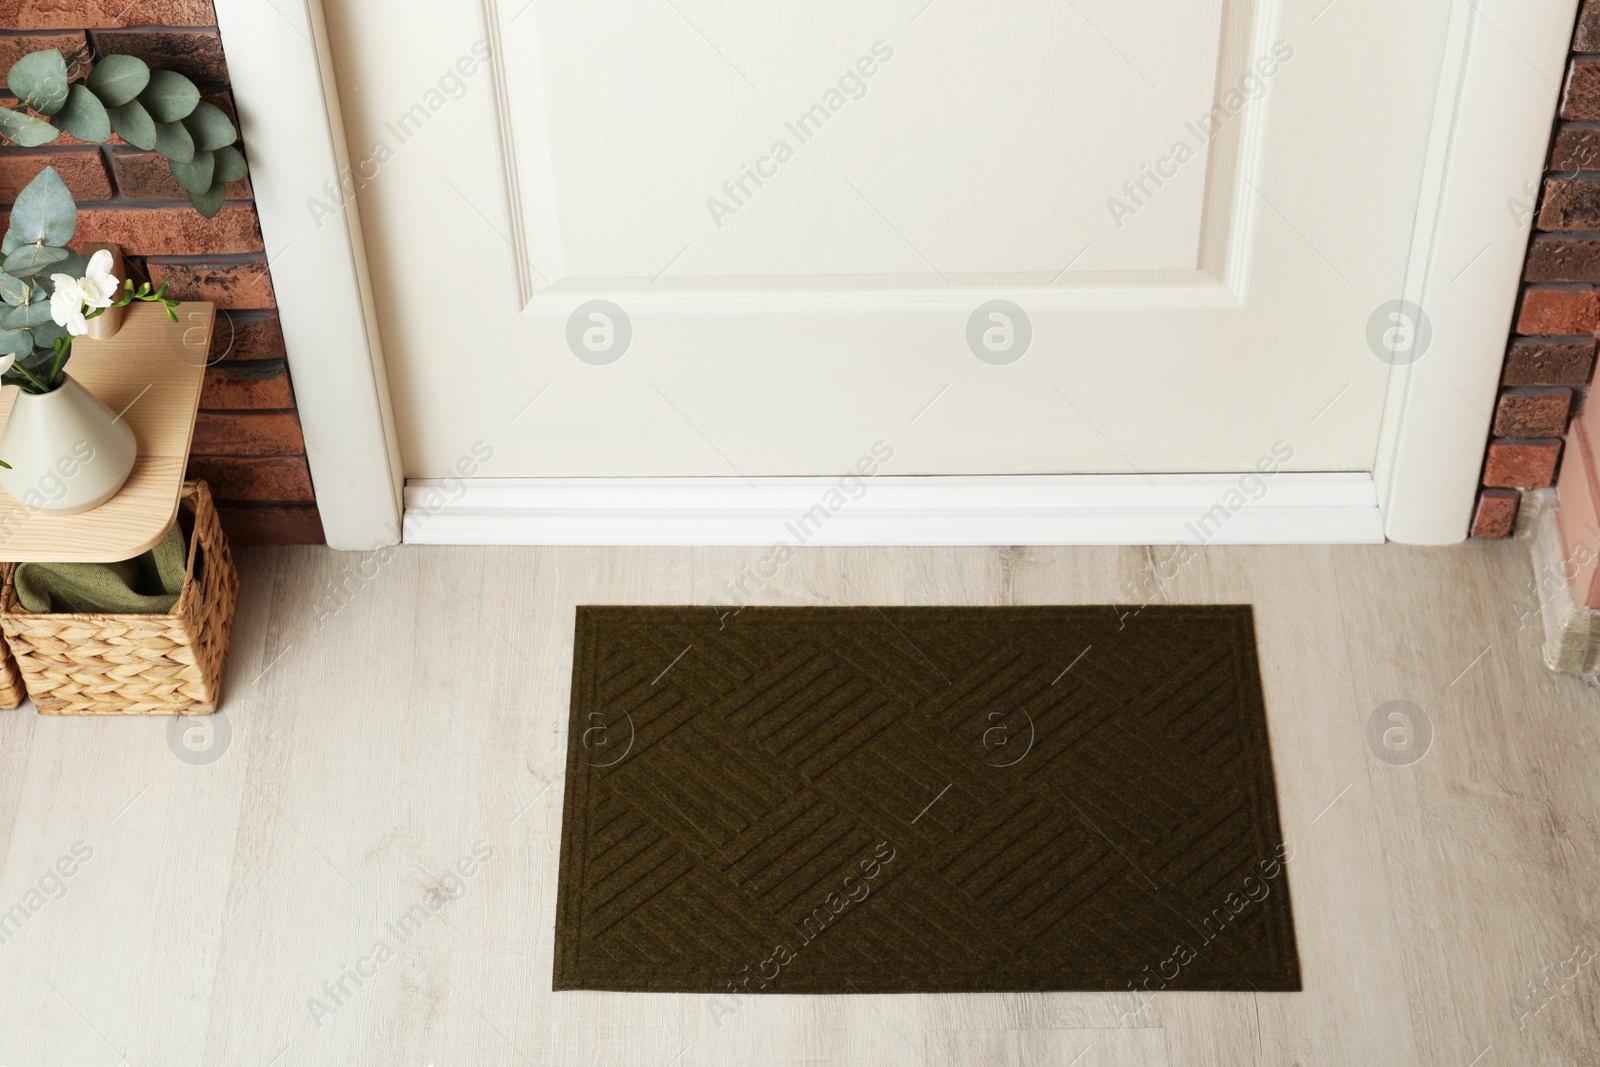 Photo of Dark olive door mat on wooden floor in hall, above view